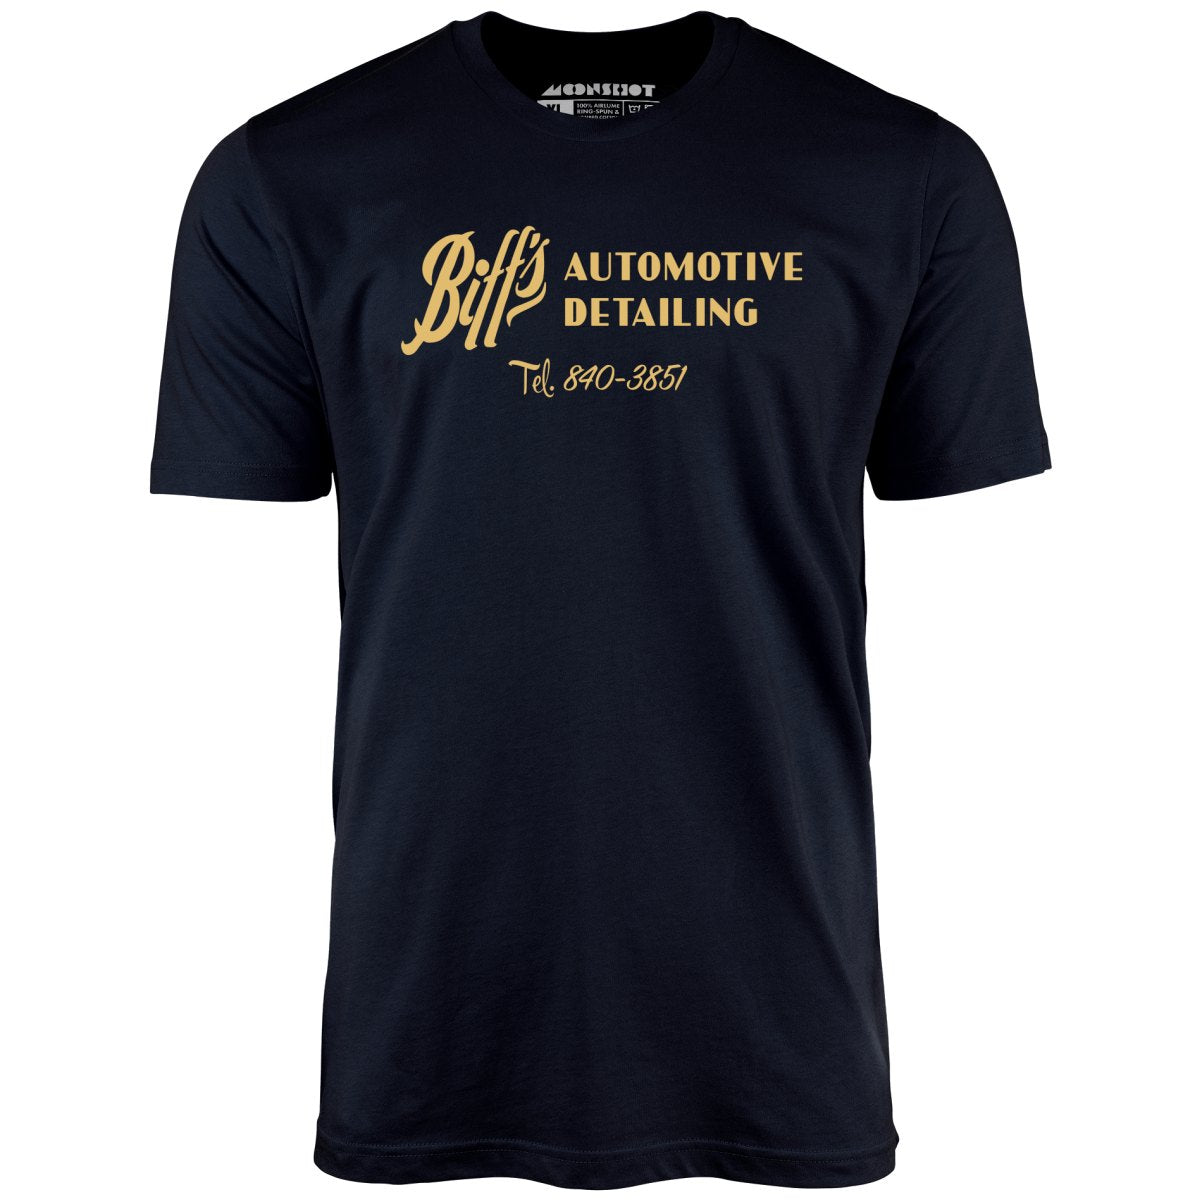 Biff's Automotive Detailing - Unisex T-Shirt